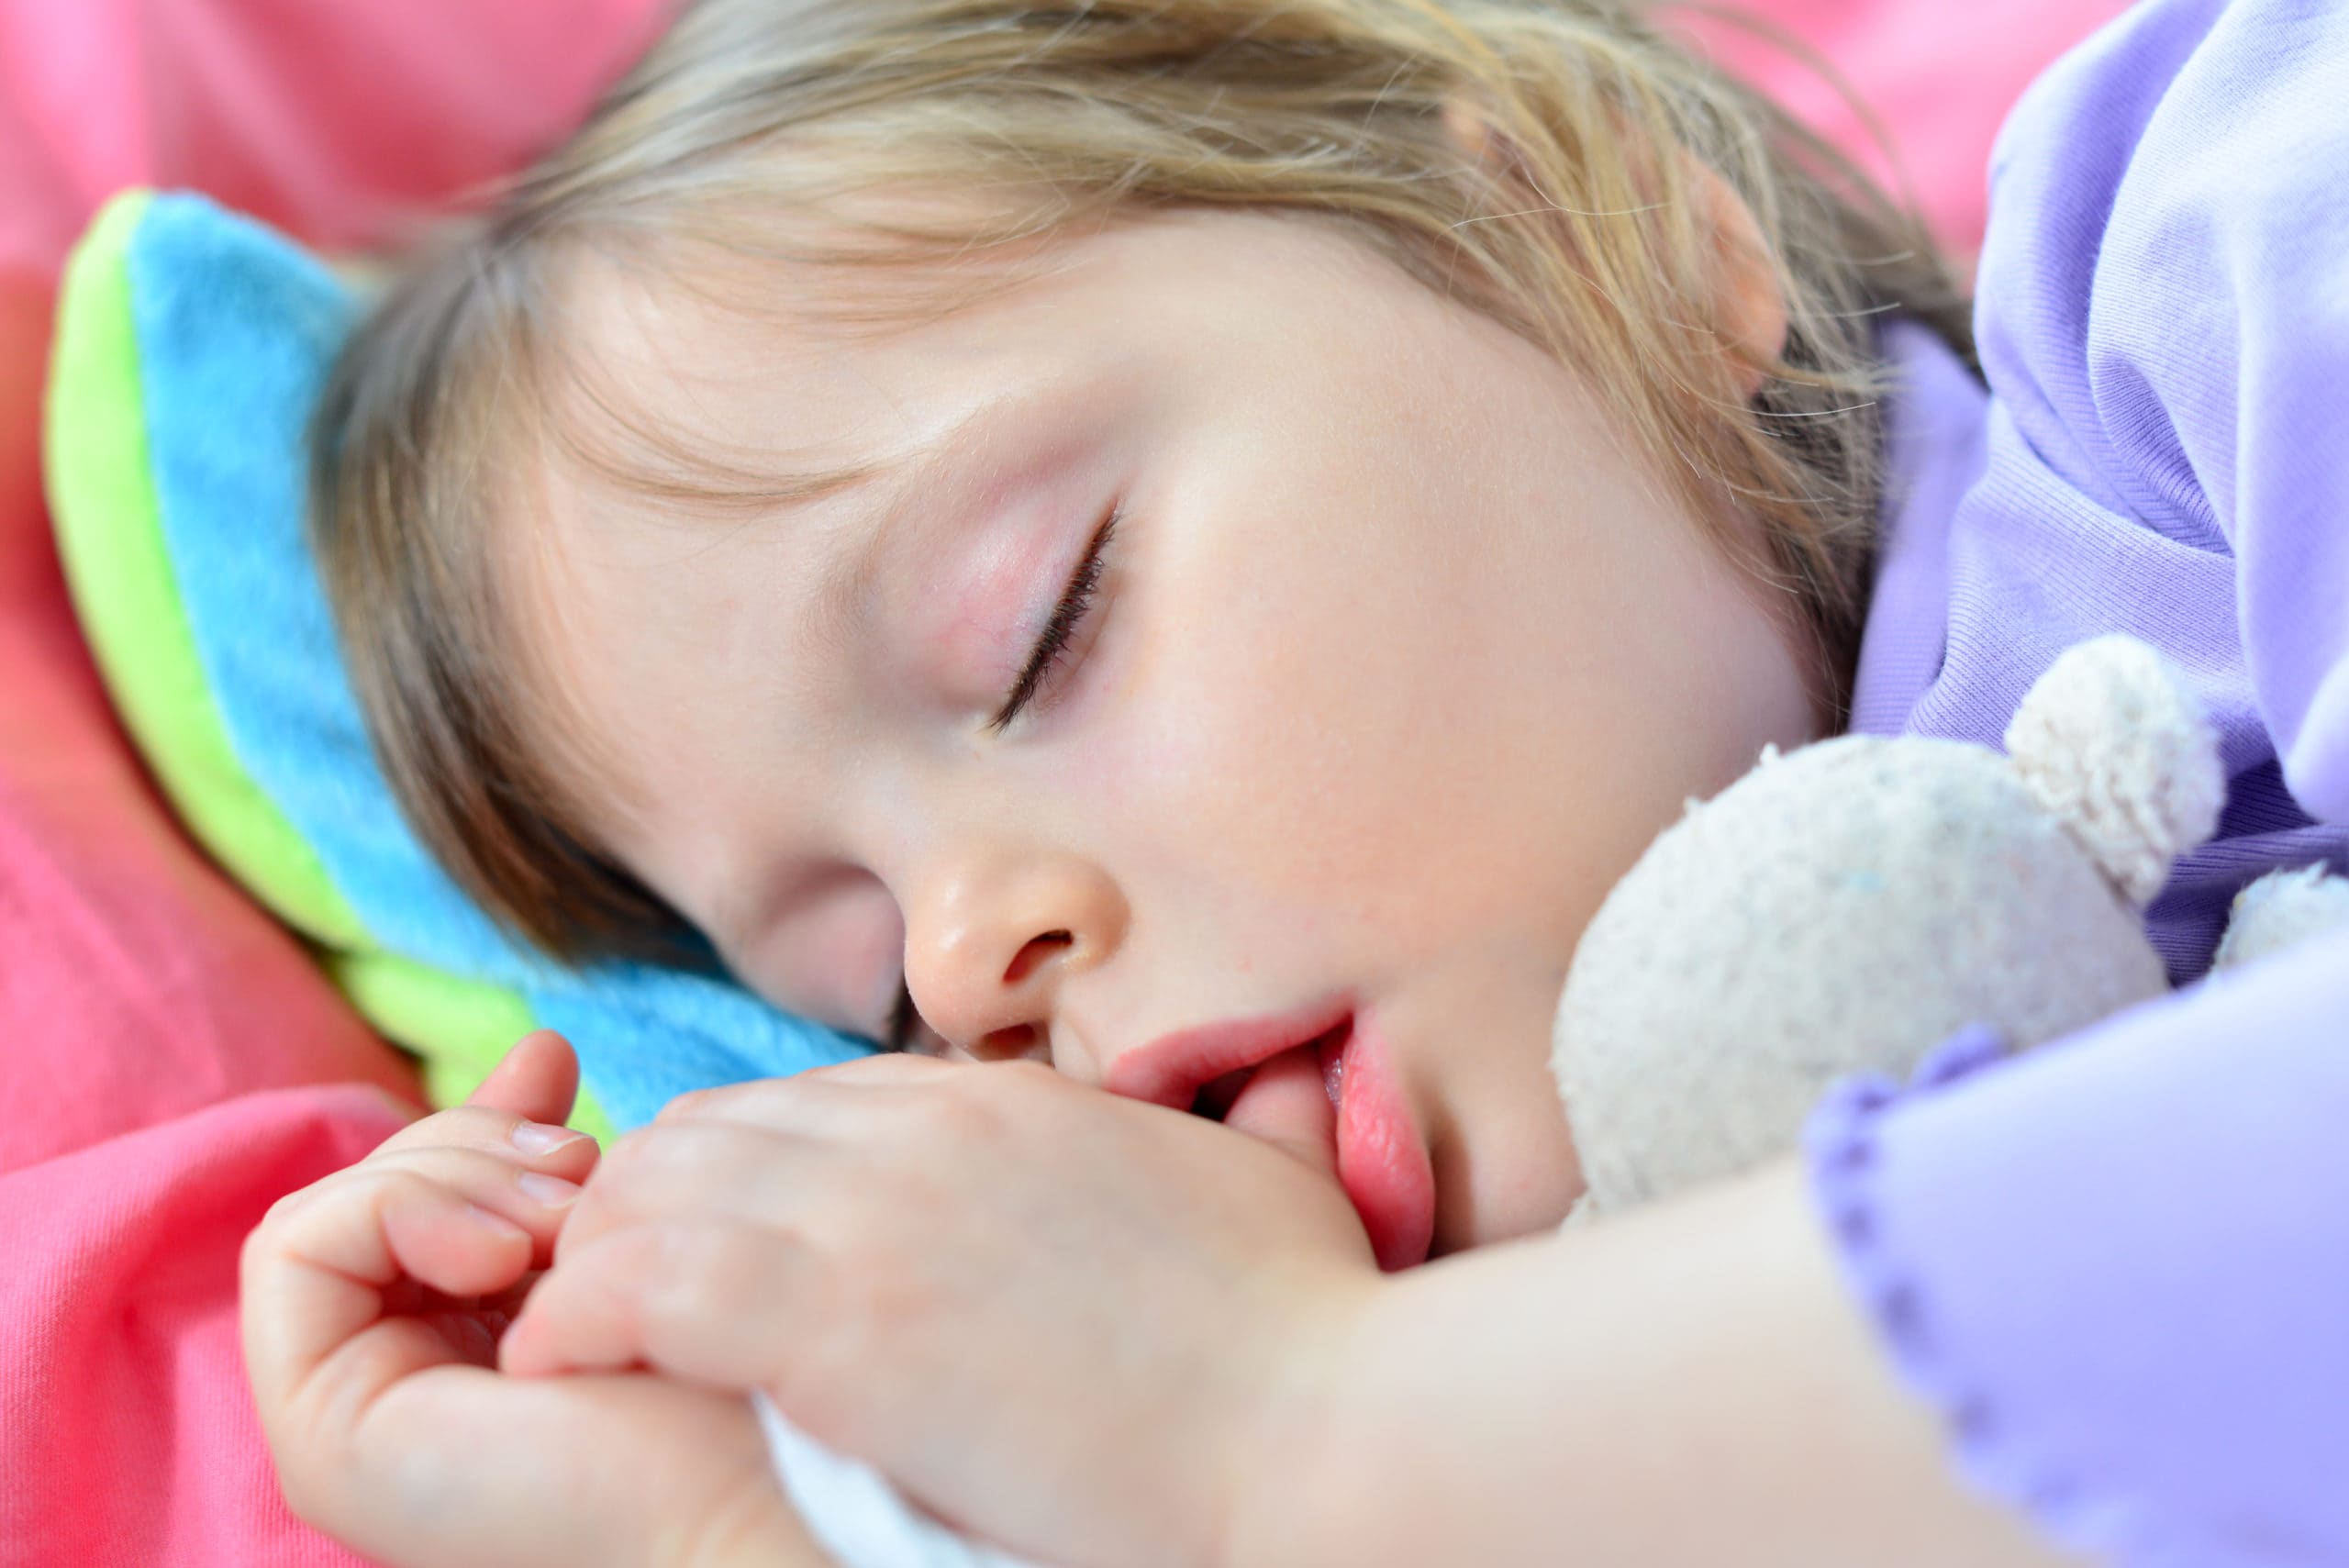 Сую пальцы спящей. Дети спят с открытыми ртами. Спящие дети с открытым ртом. Ребенок с пальцем во рту.